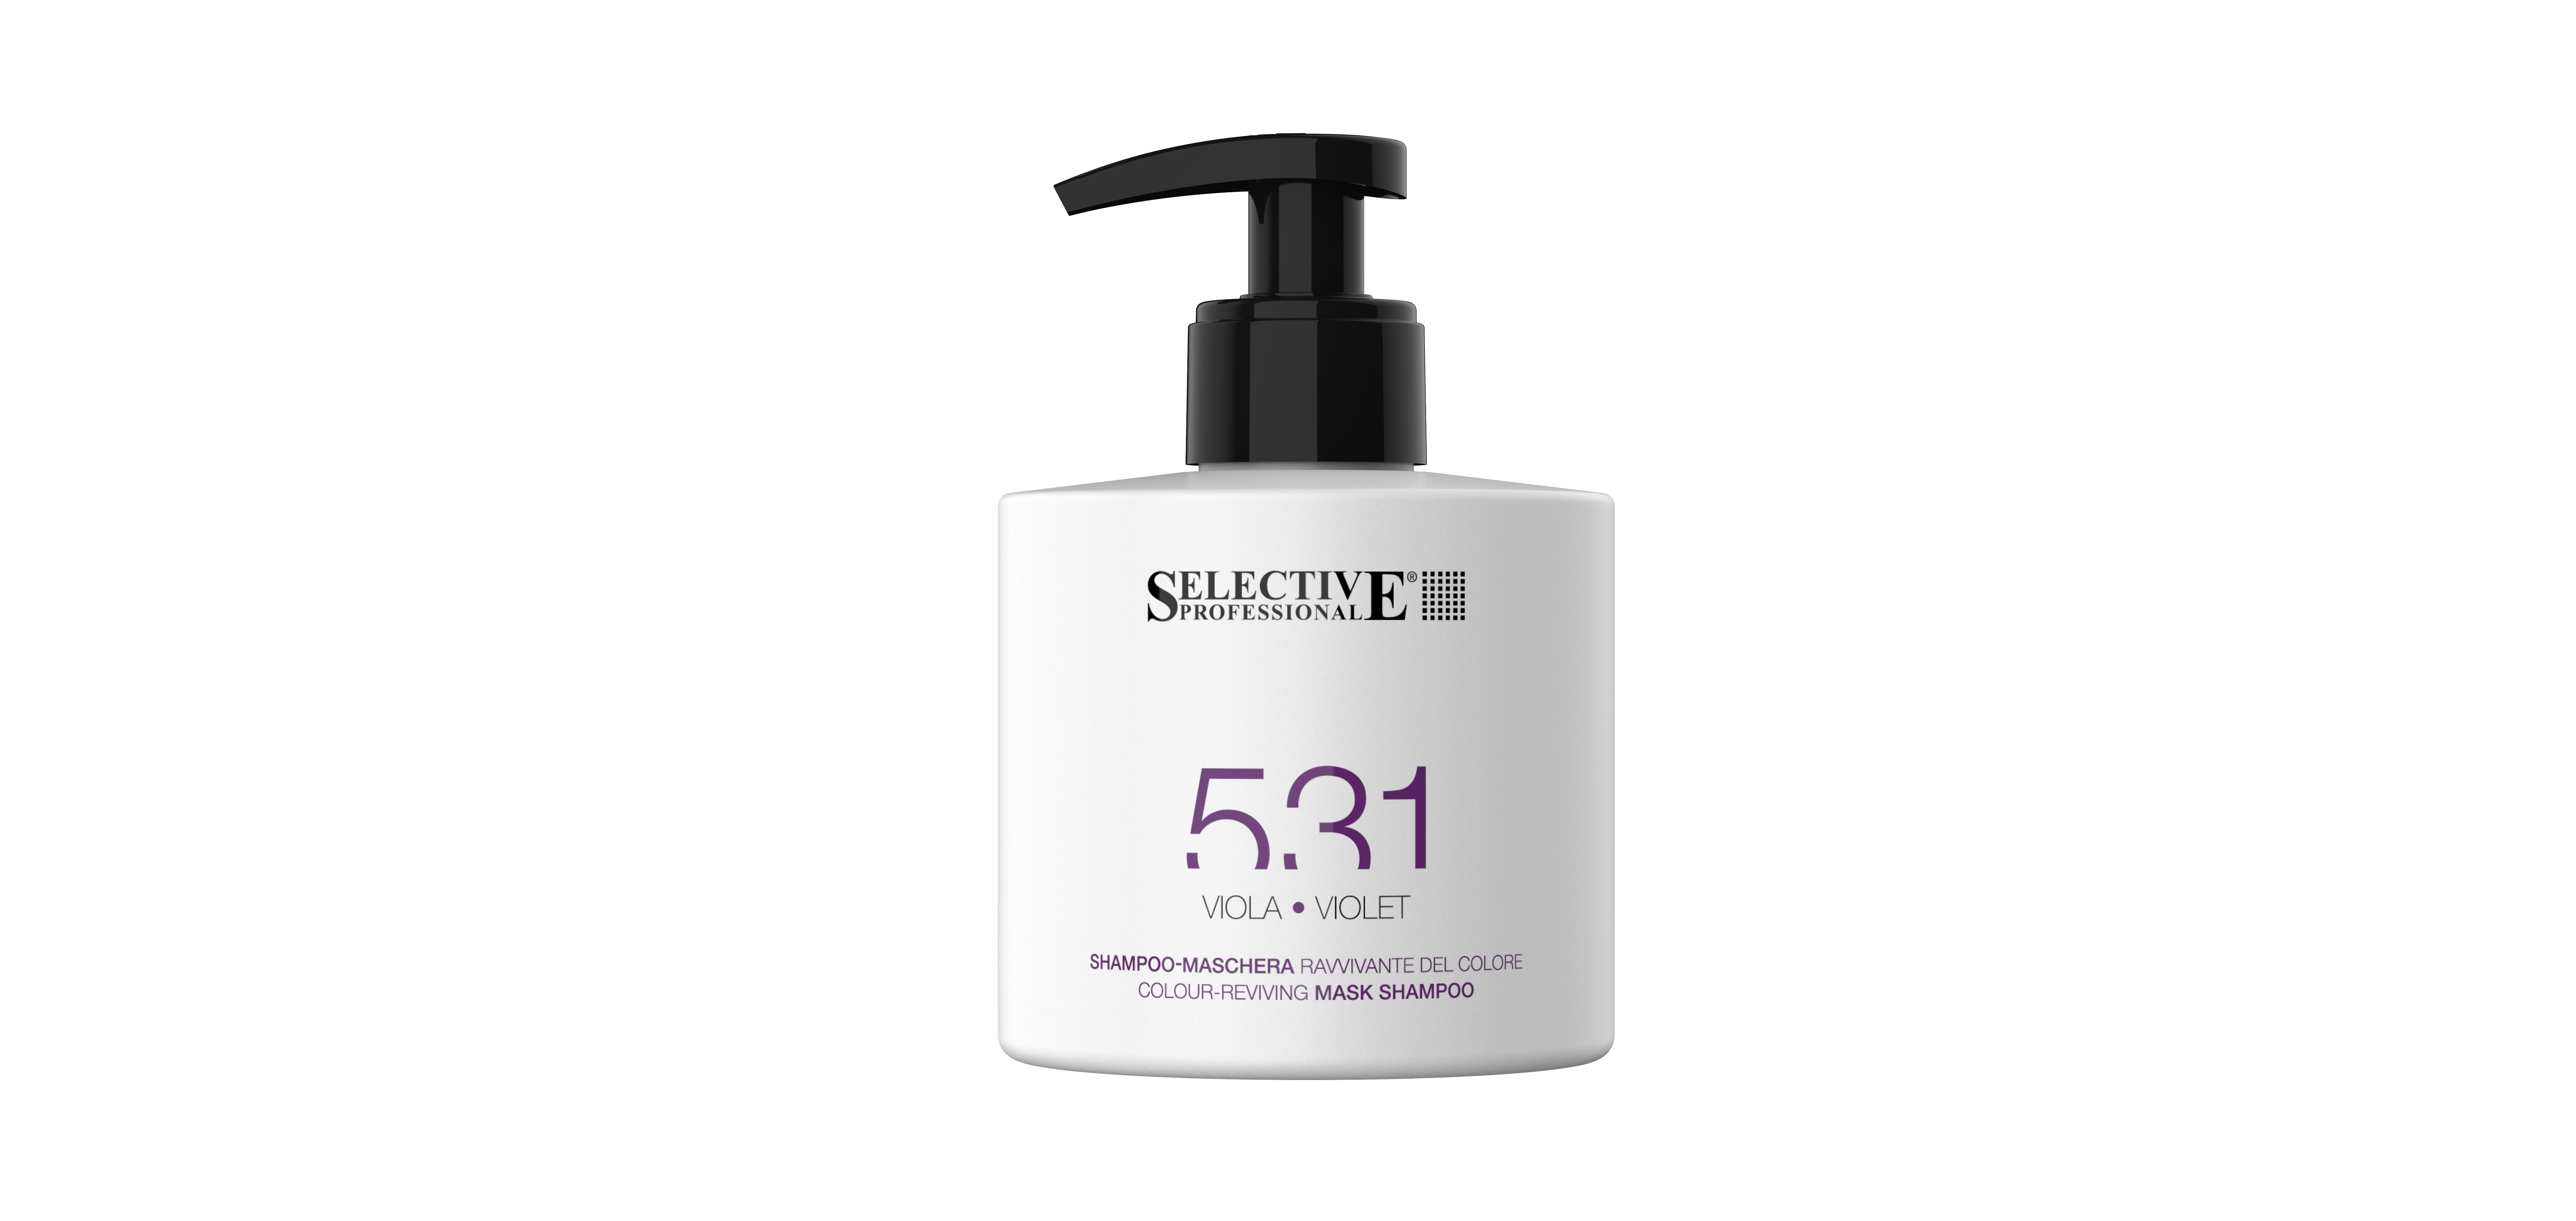 Шампуни для волос:  SELECTIVE PROFESSIONAL -  Оттеночный шампунь - маска 531 для возобновления цвета волос, Фиолетовый (275 мл)